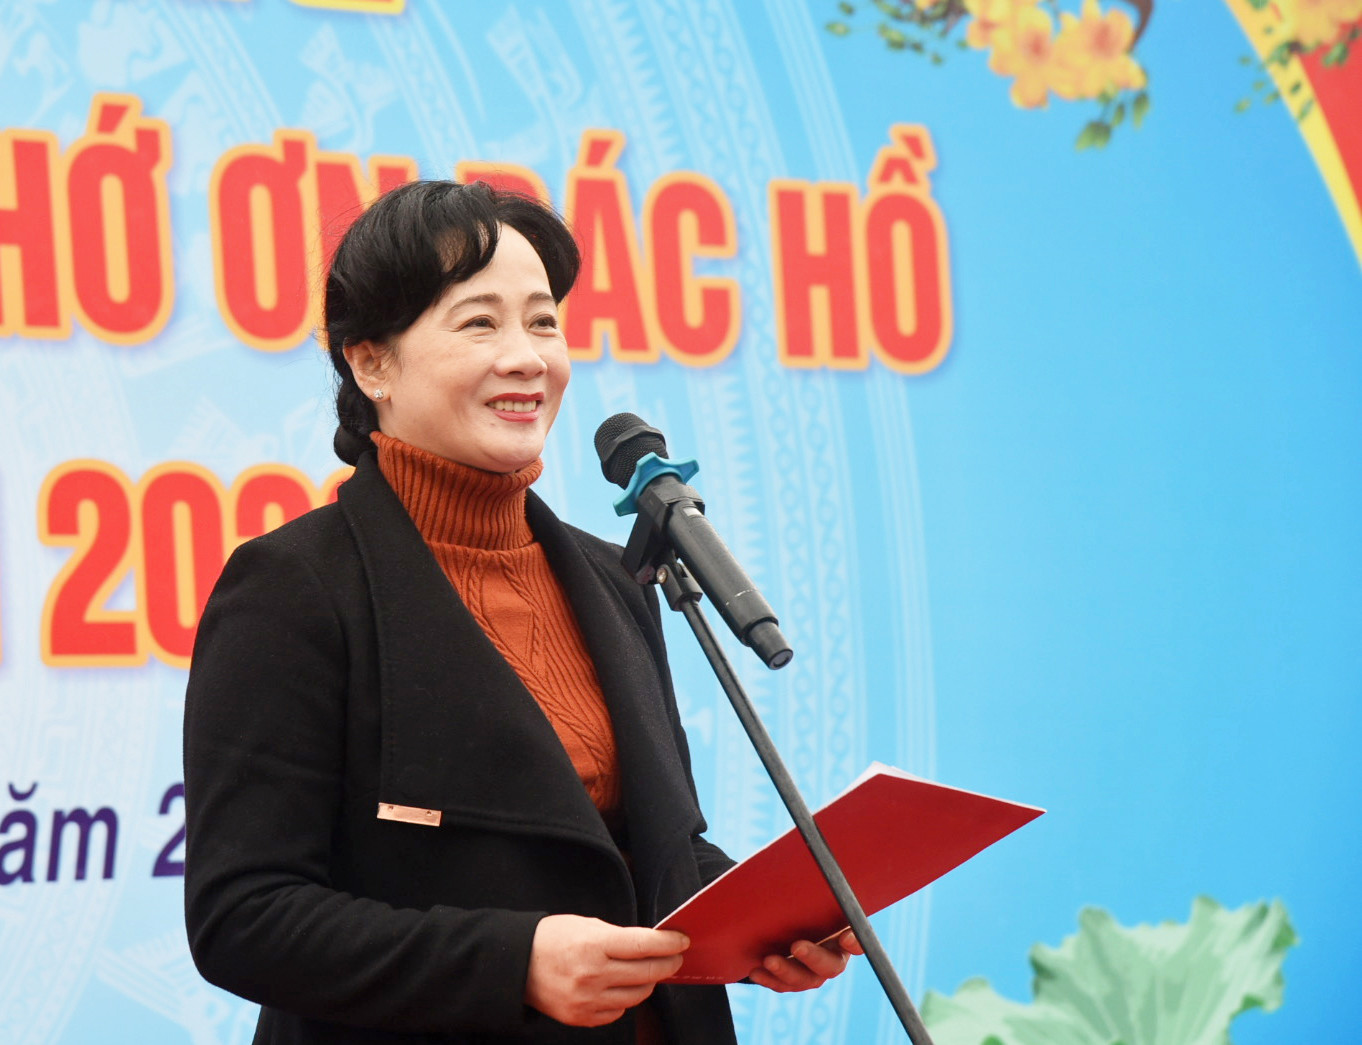 Đồng chí Phan Thị Hoan - Ủy viên BCH Đảng bộ tỉnh, Bí thư Đảng ủy Khối Doanh nghiệp tỉnh phát biểu tại buổi lễ. Ảnh: T.G